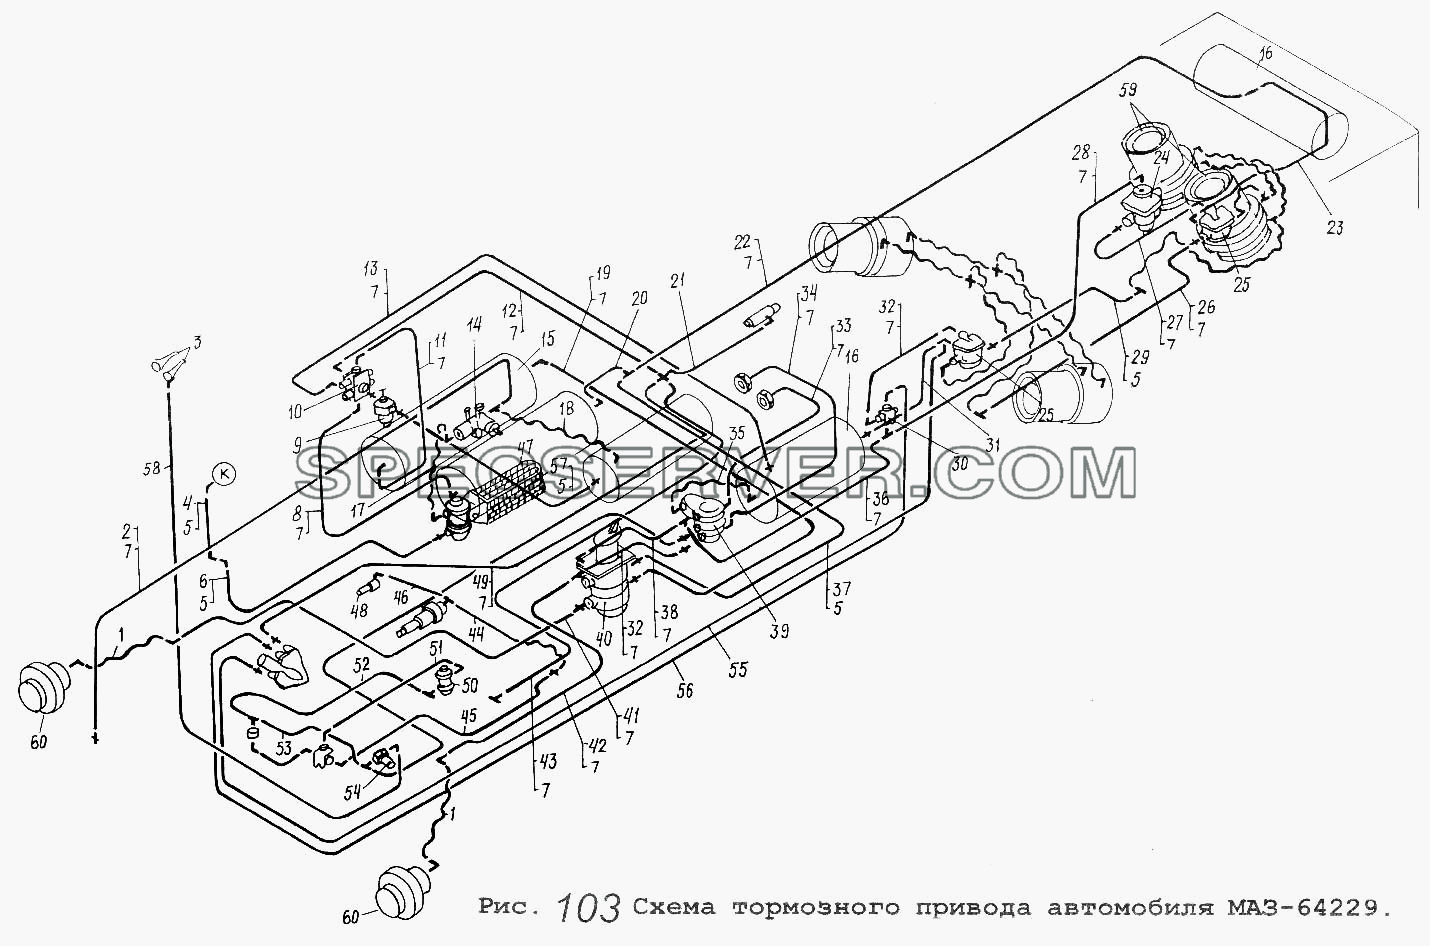 Схема тормозного привода автомобиля МАЗ-64229 для МАЗ-64229 (список запасных частей)